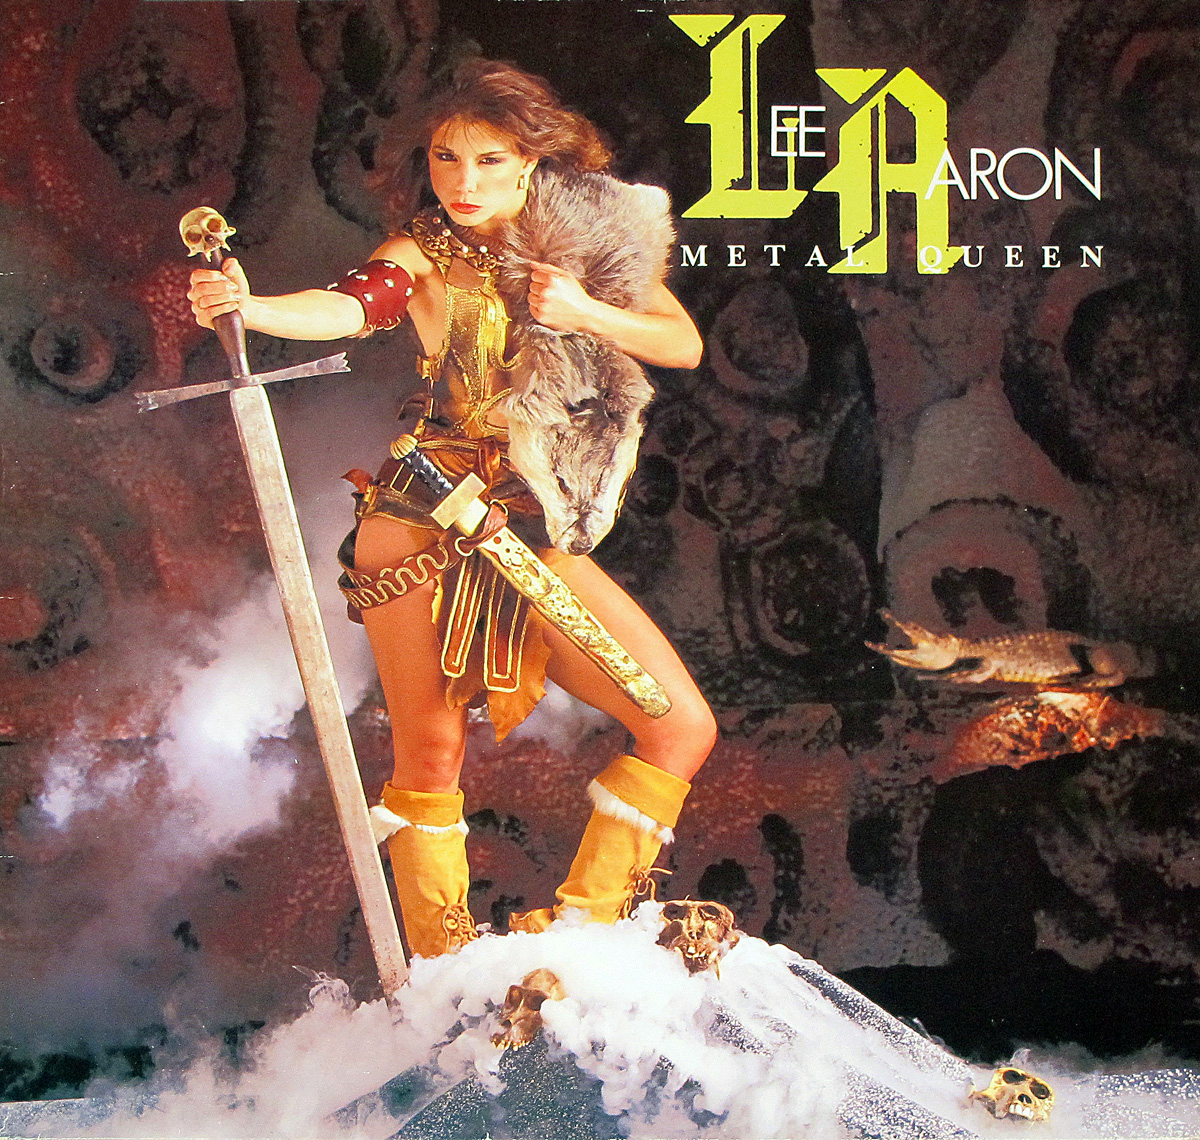 Front Cover Photo Of LEE AARON - Metal Queen Virgin Records 12" LP Vinyl Album